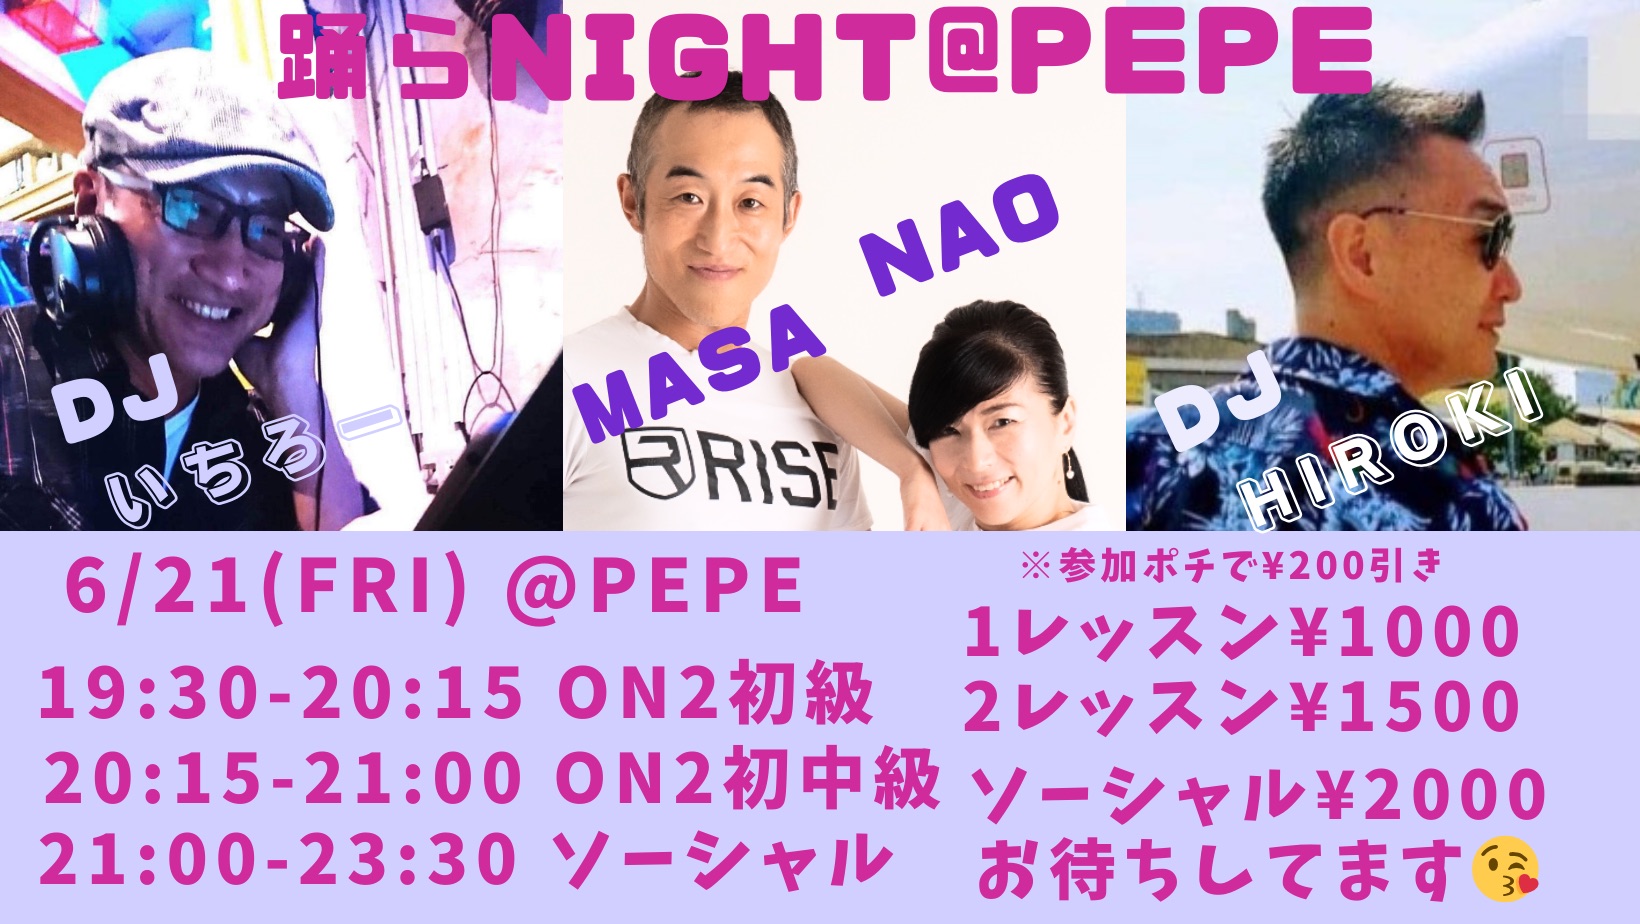 Nao Masa今宵は踊らNight @pepe